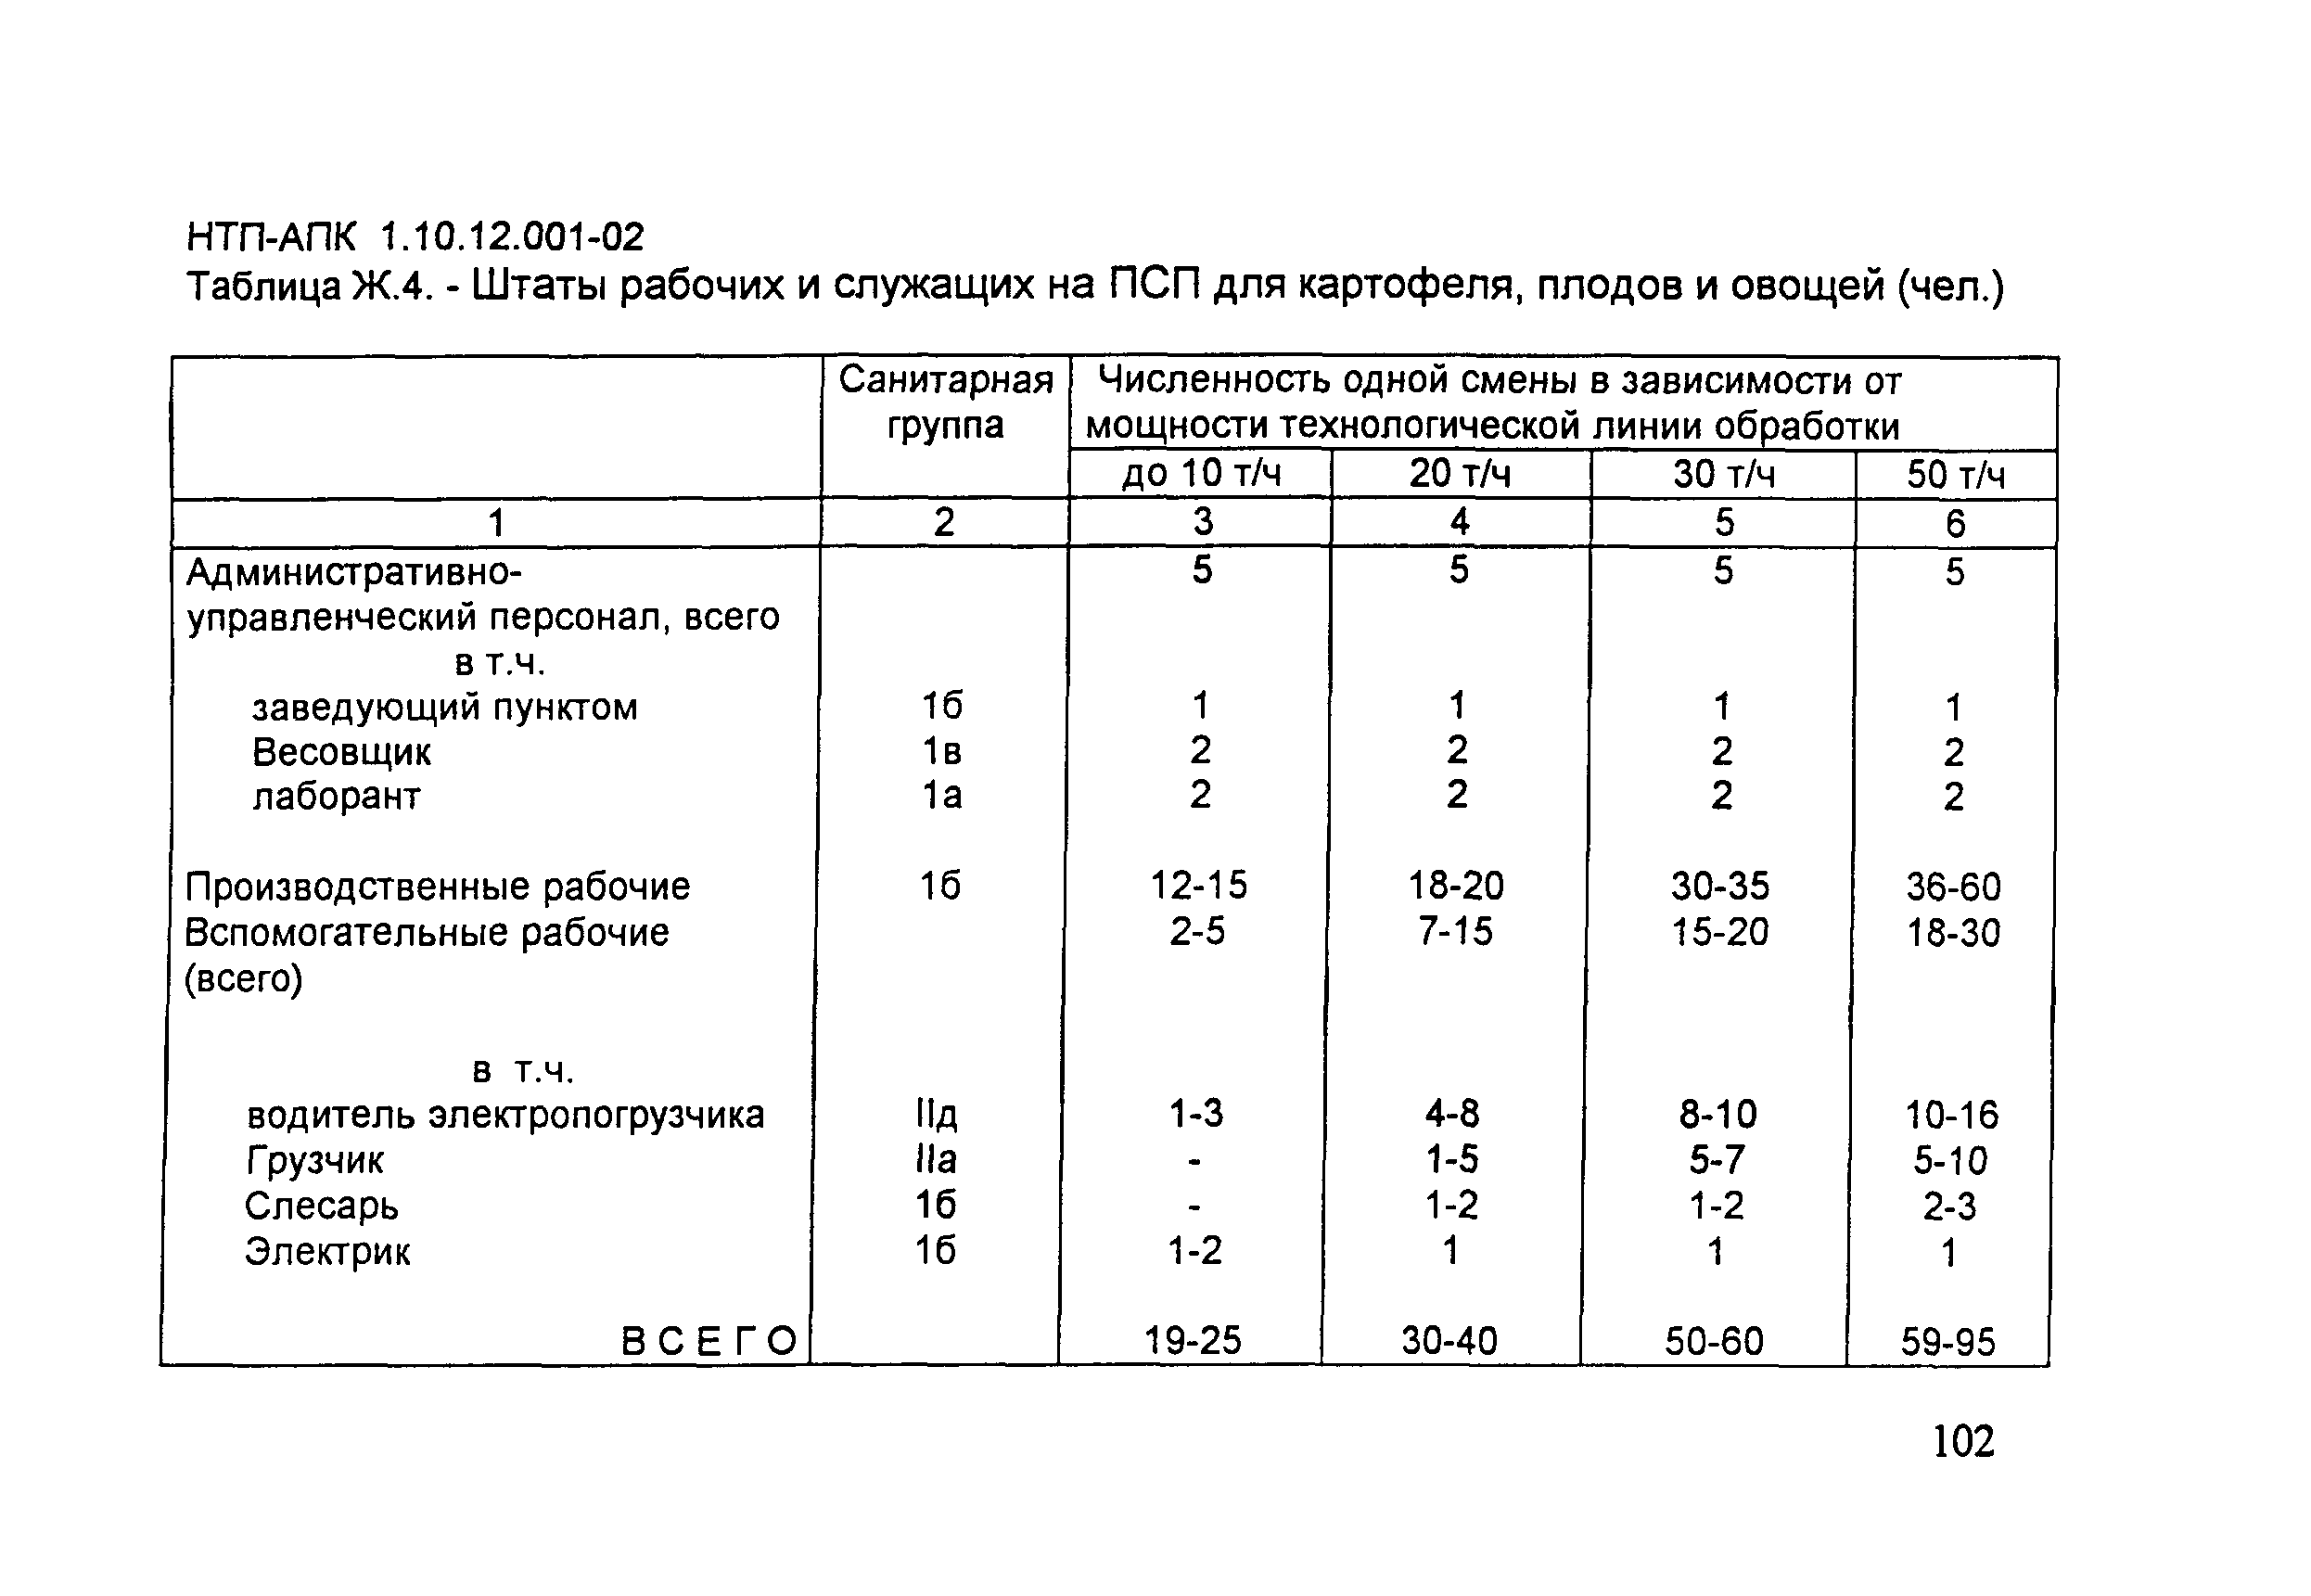 НТП-АПК 1.10.12.001-02